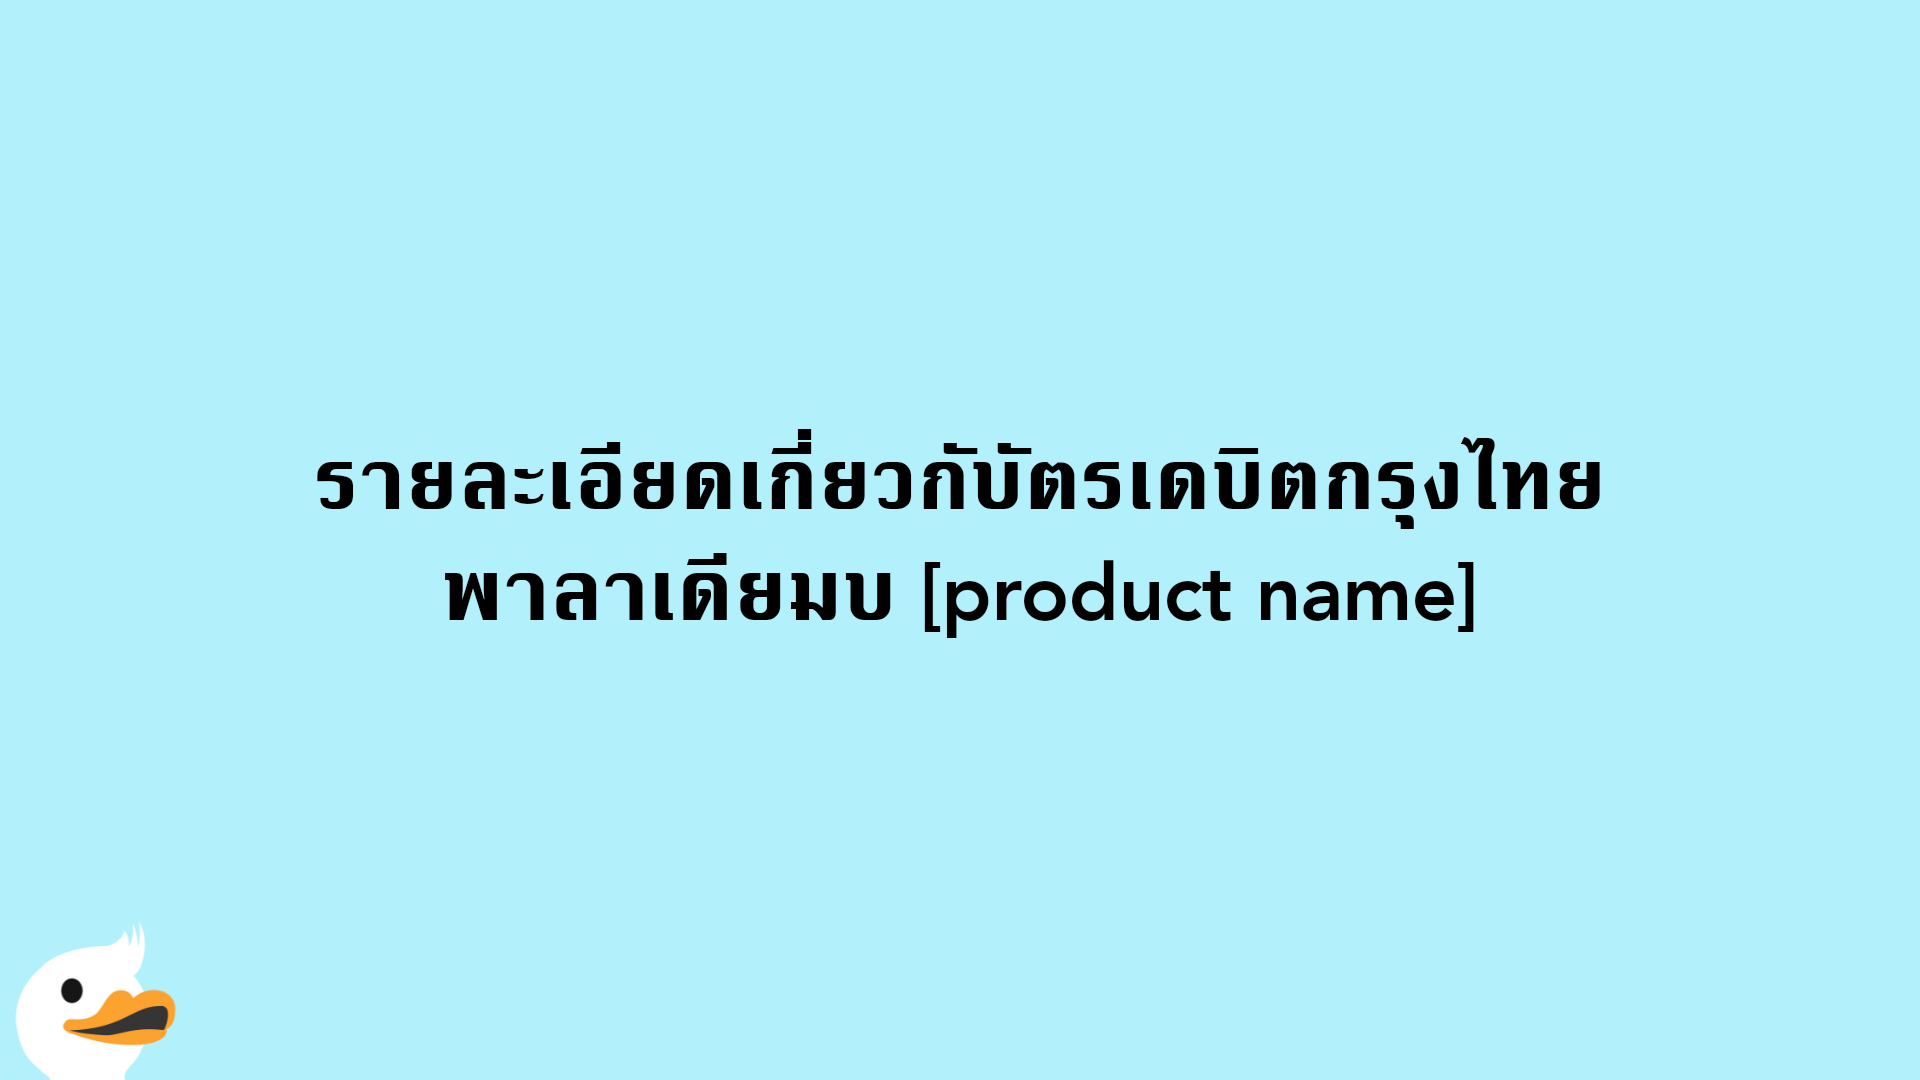 รายละเอียดเกี่ยวกับัตรเดบิตกรุงไทย พาลาเดียมบ [product name]